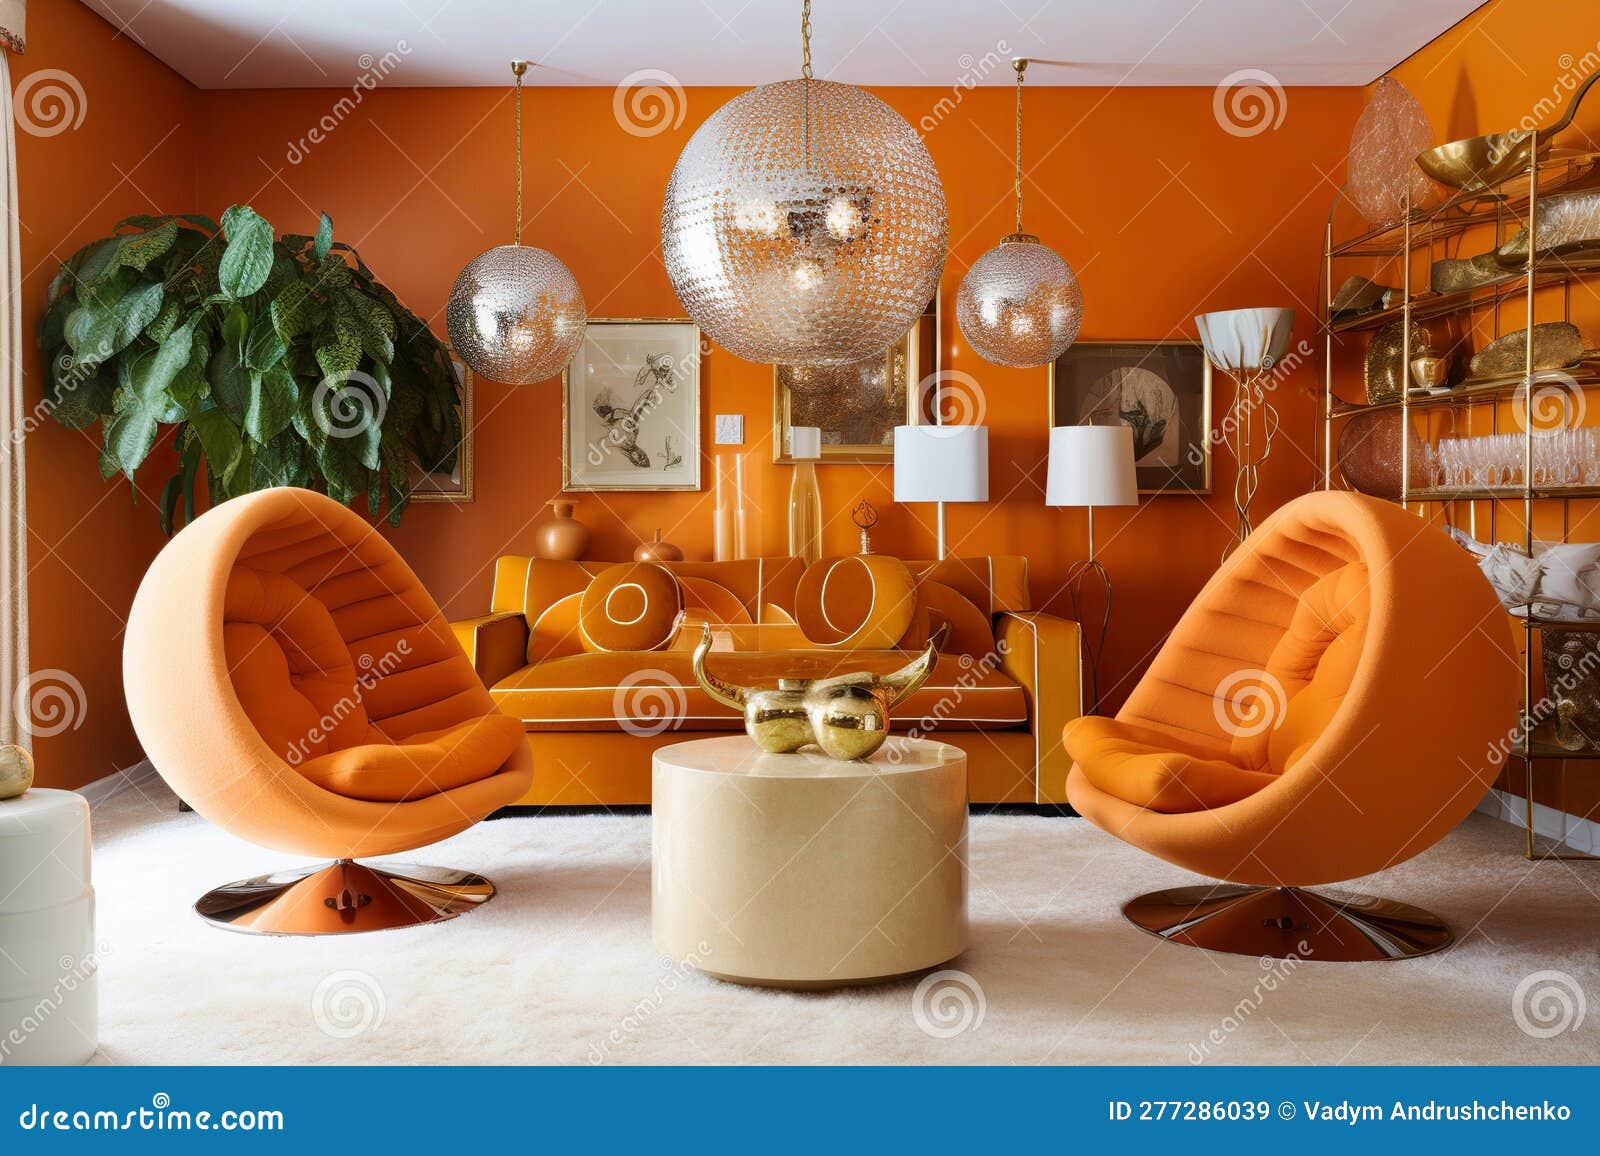 Accessoire Cuisine Decoration Interieur Maison Design géométrique Gris  Orange insonorisé décoration Circulaire Facile à Entretenir Salon Interieur